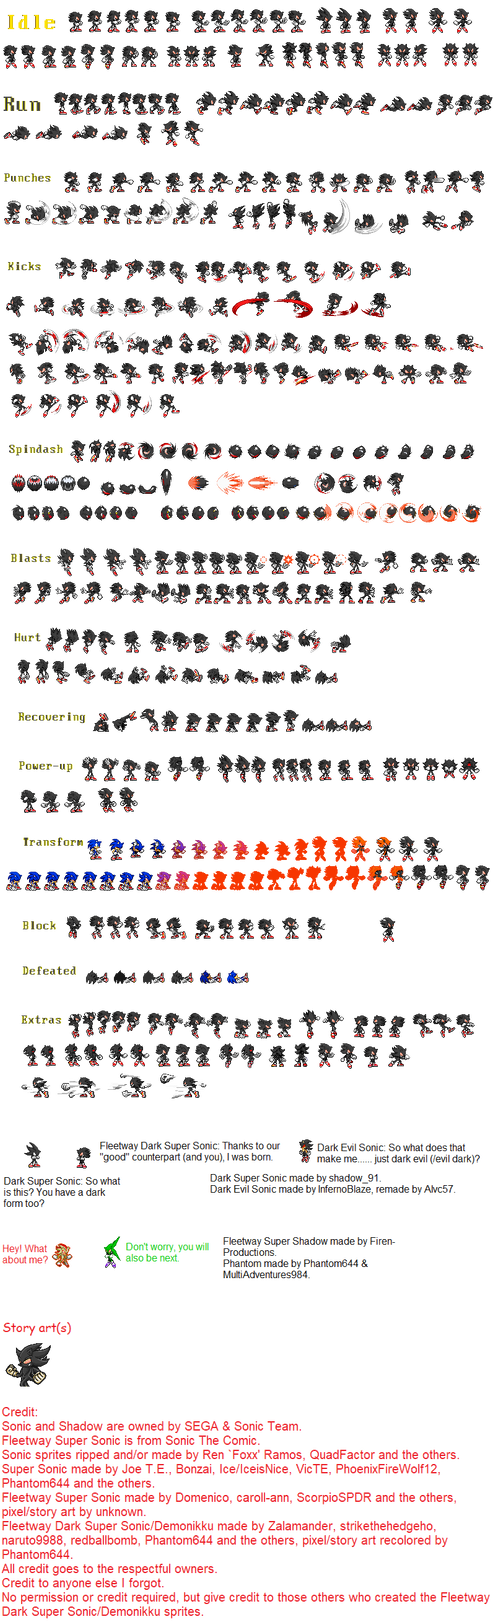 Multiverse Fleetway Super Sonic - sprite sheet by Swagboy567 on DeviantArt